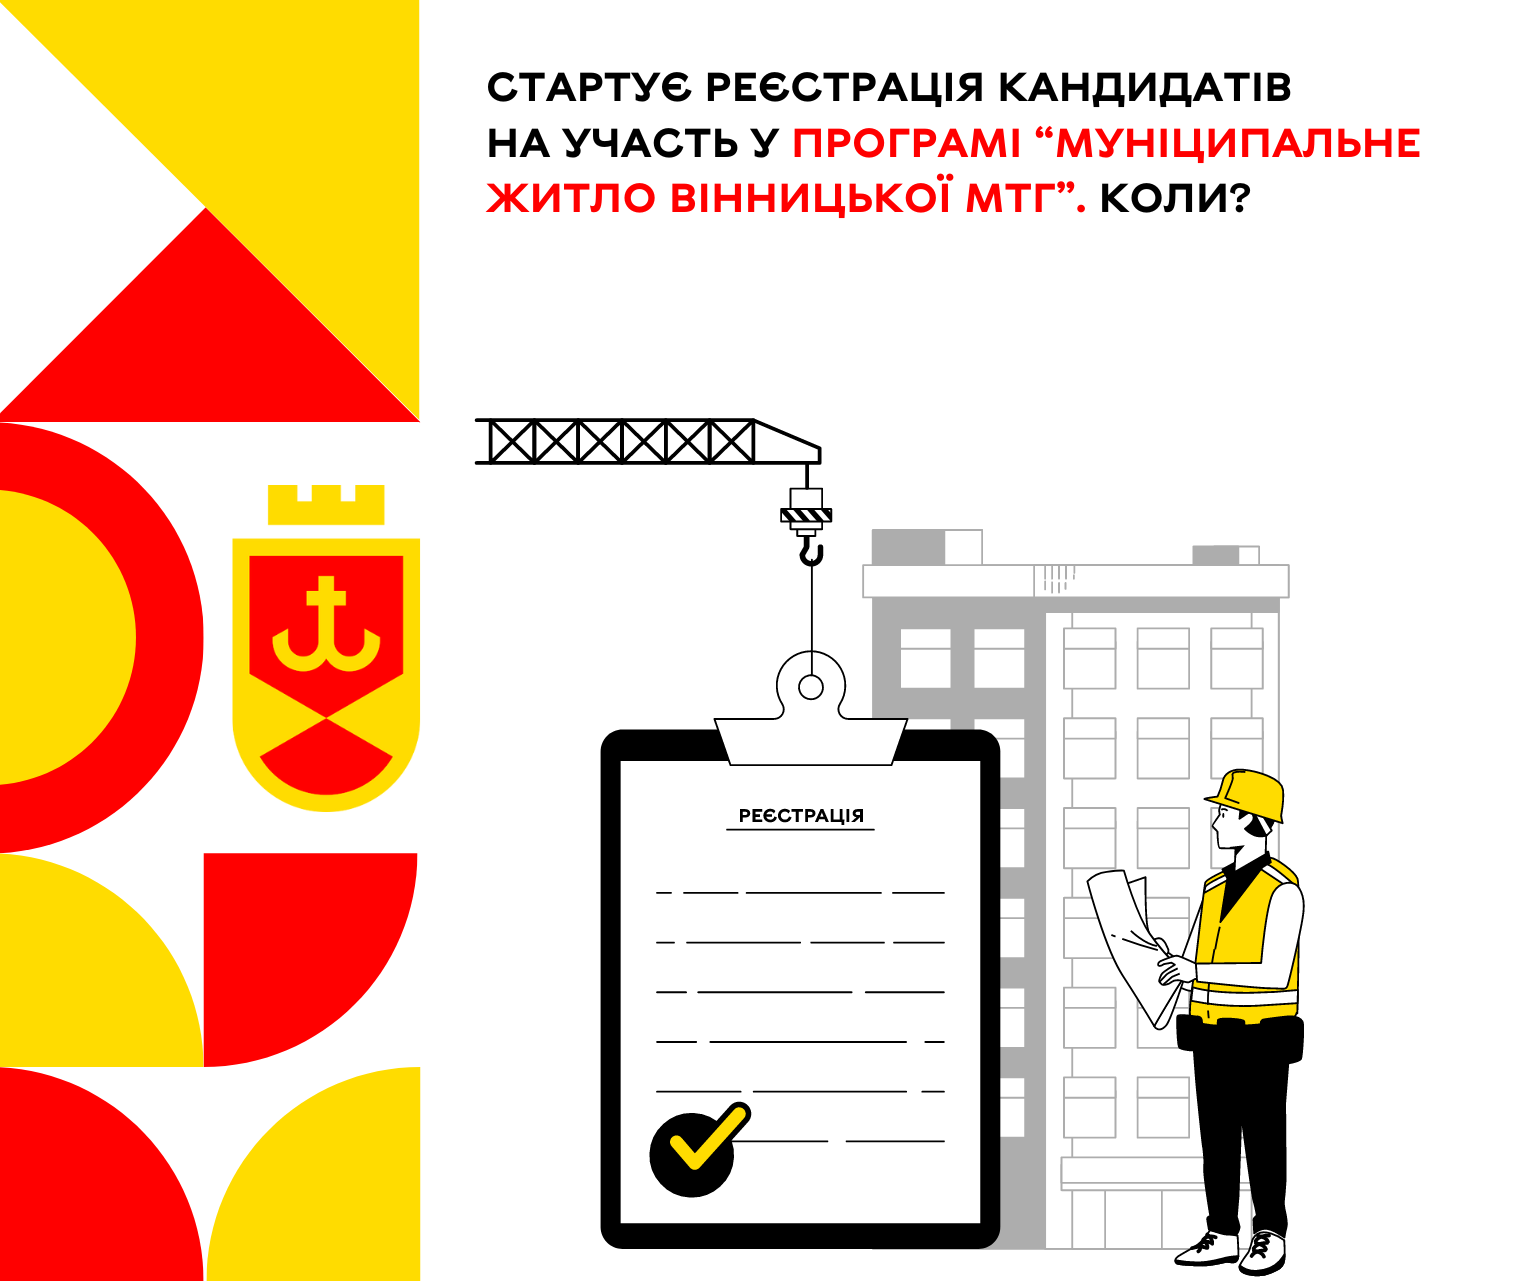 Коли стартує реєстрація кандидатів на участь у Програмі “Муніципальне житло Вінницької МТГ”?